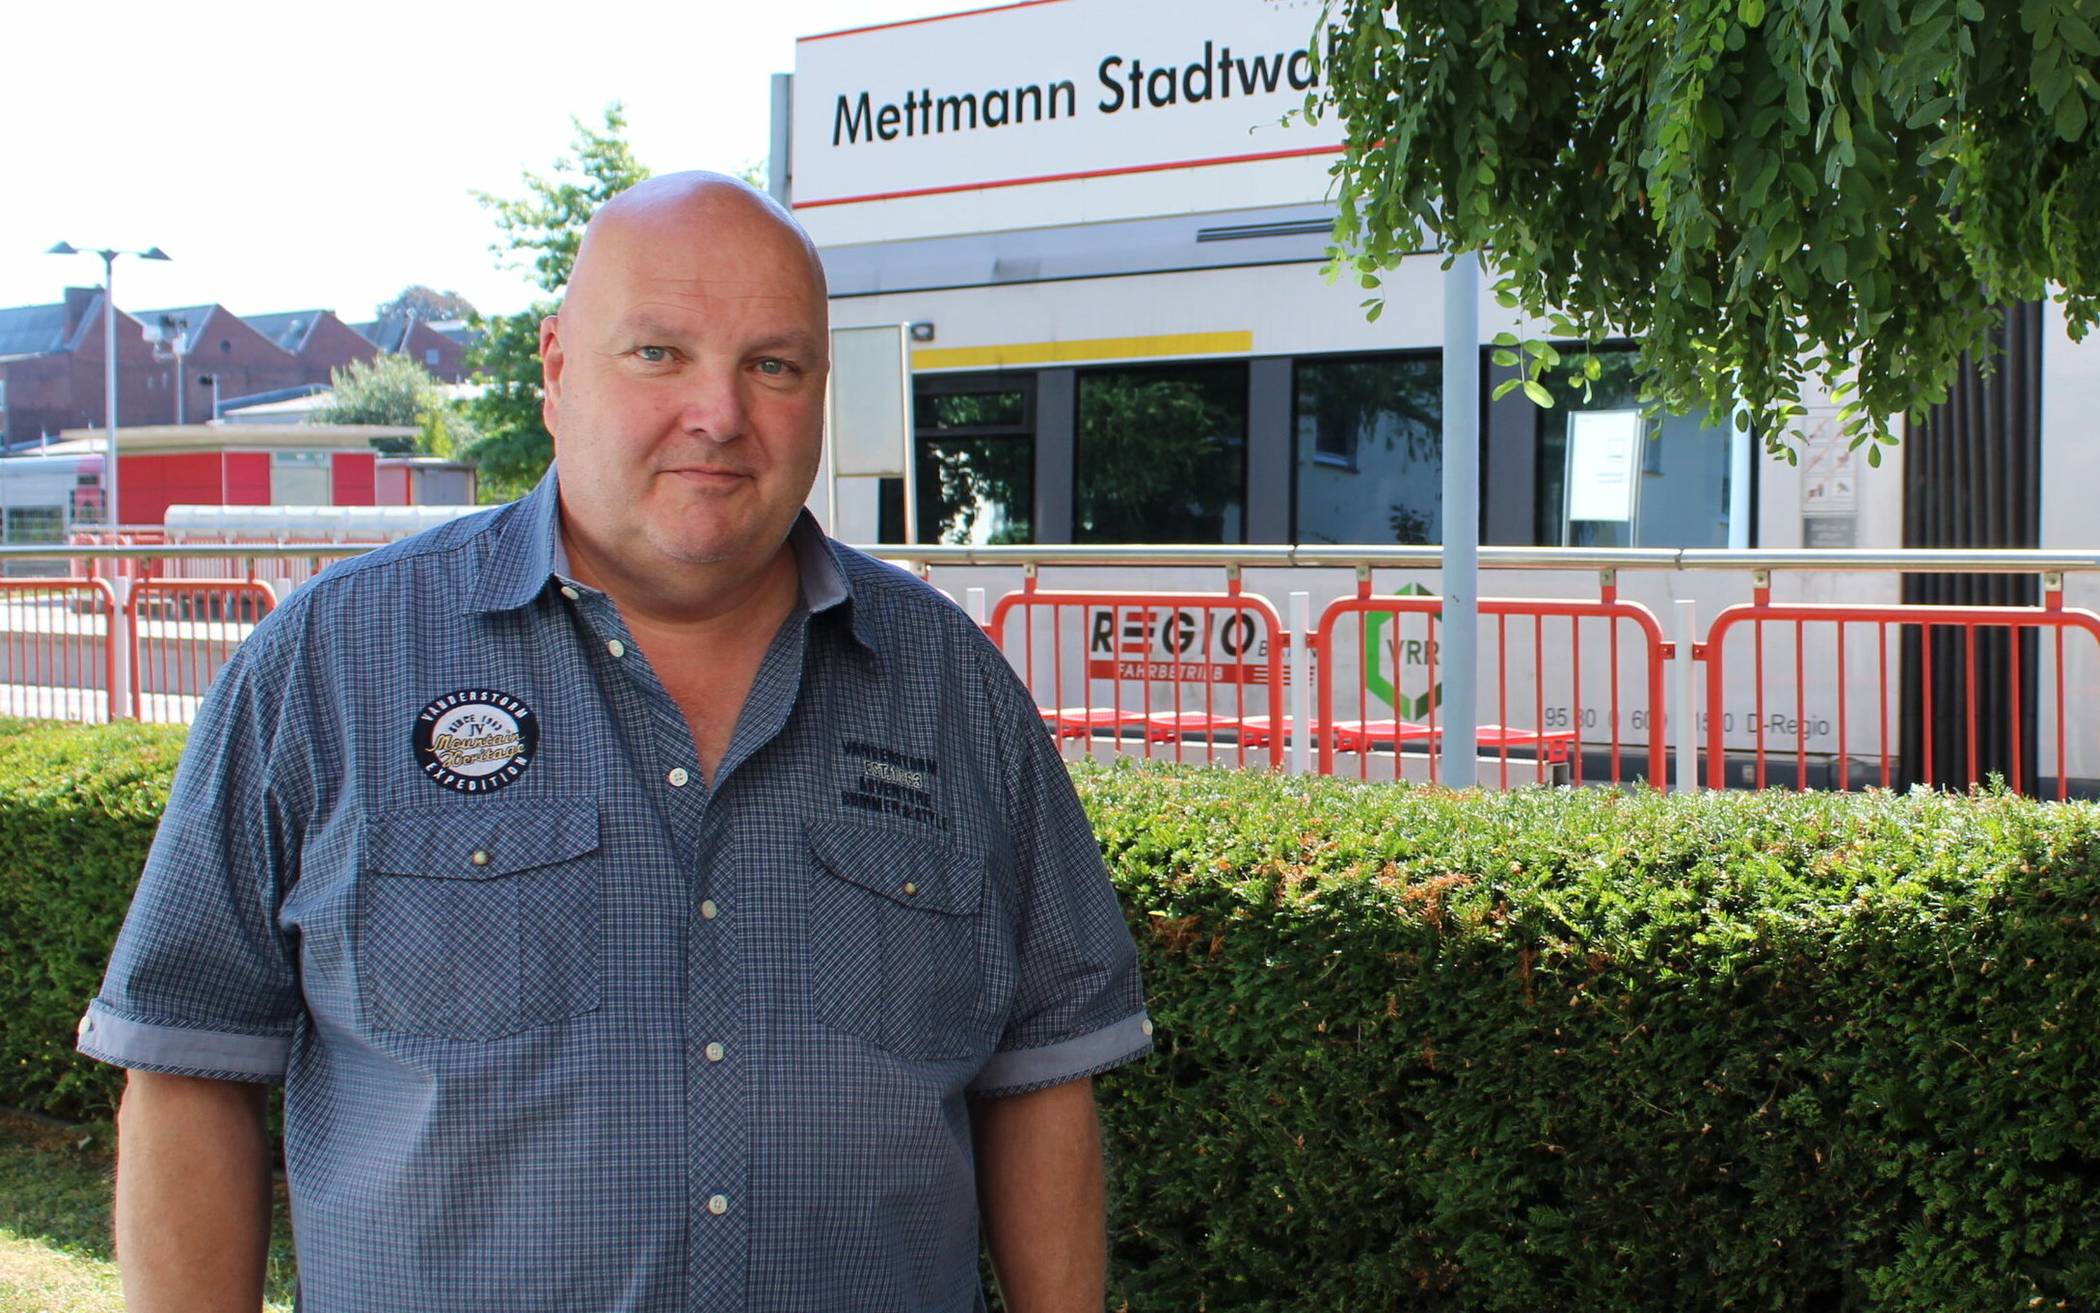  Ralf Schmidt wohnt gern neben dem Bahnhof in Mettmann. Wenn nur der ständige Lärm nicht wäre. 
  